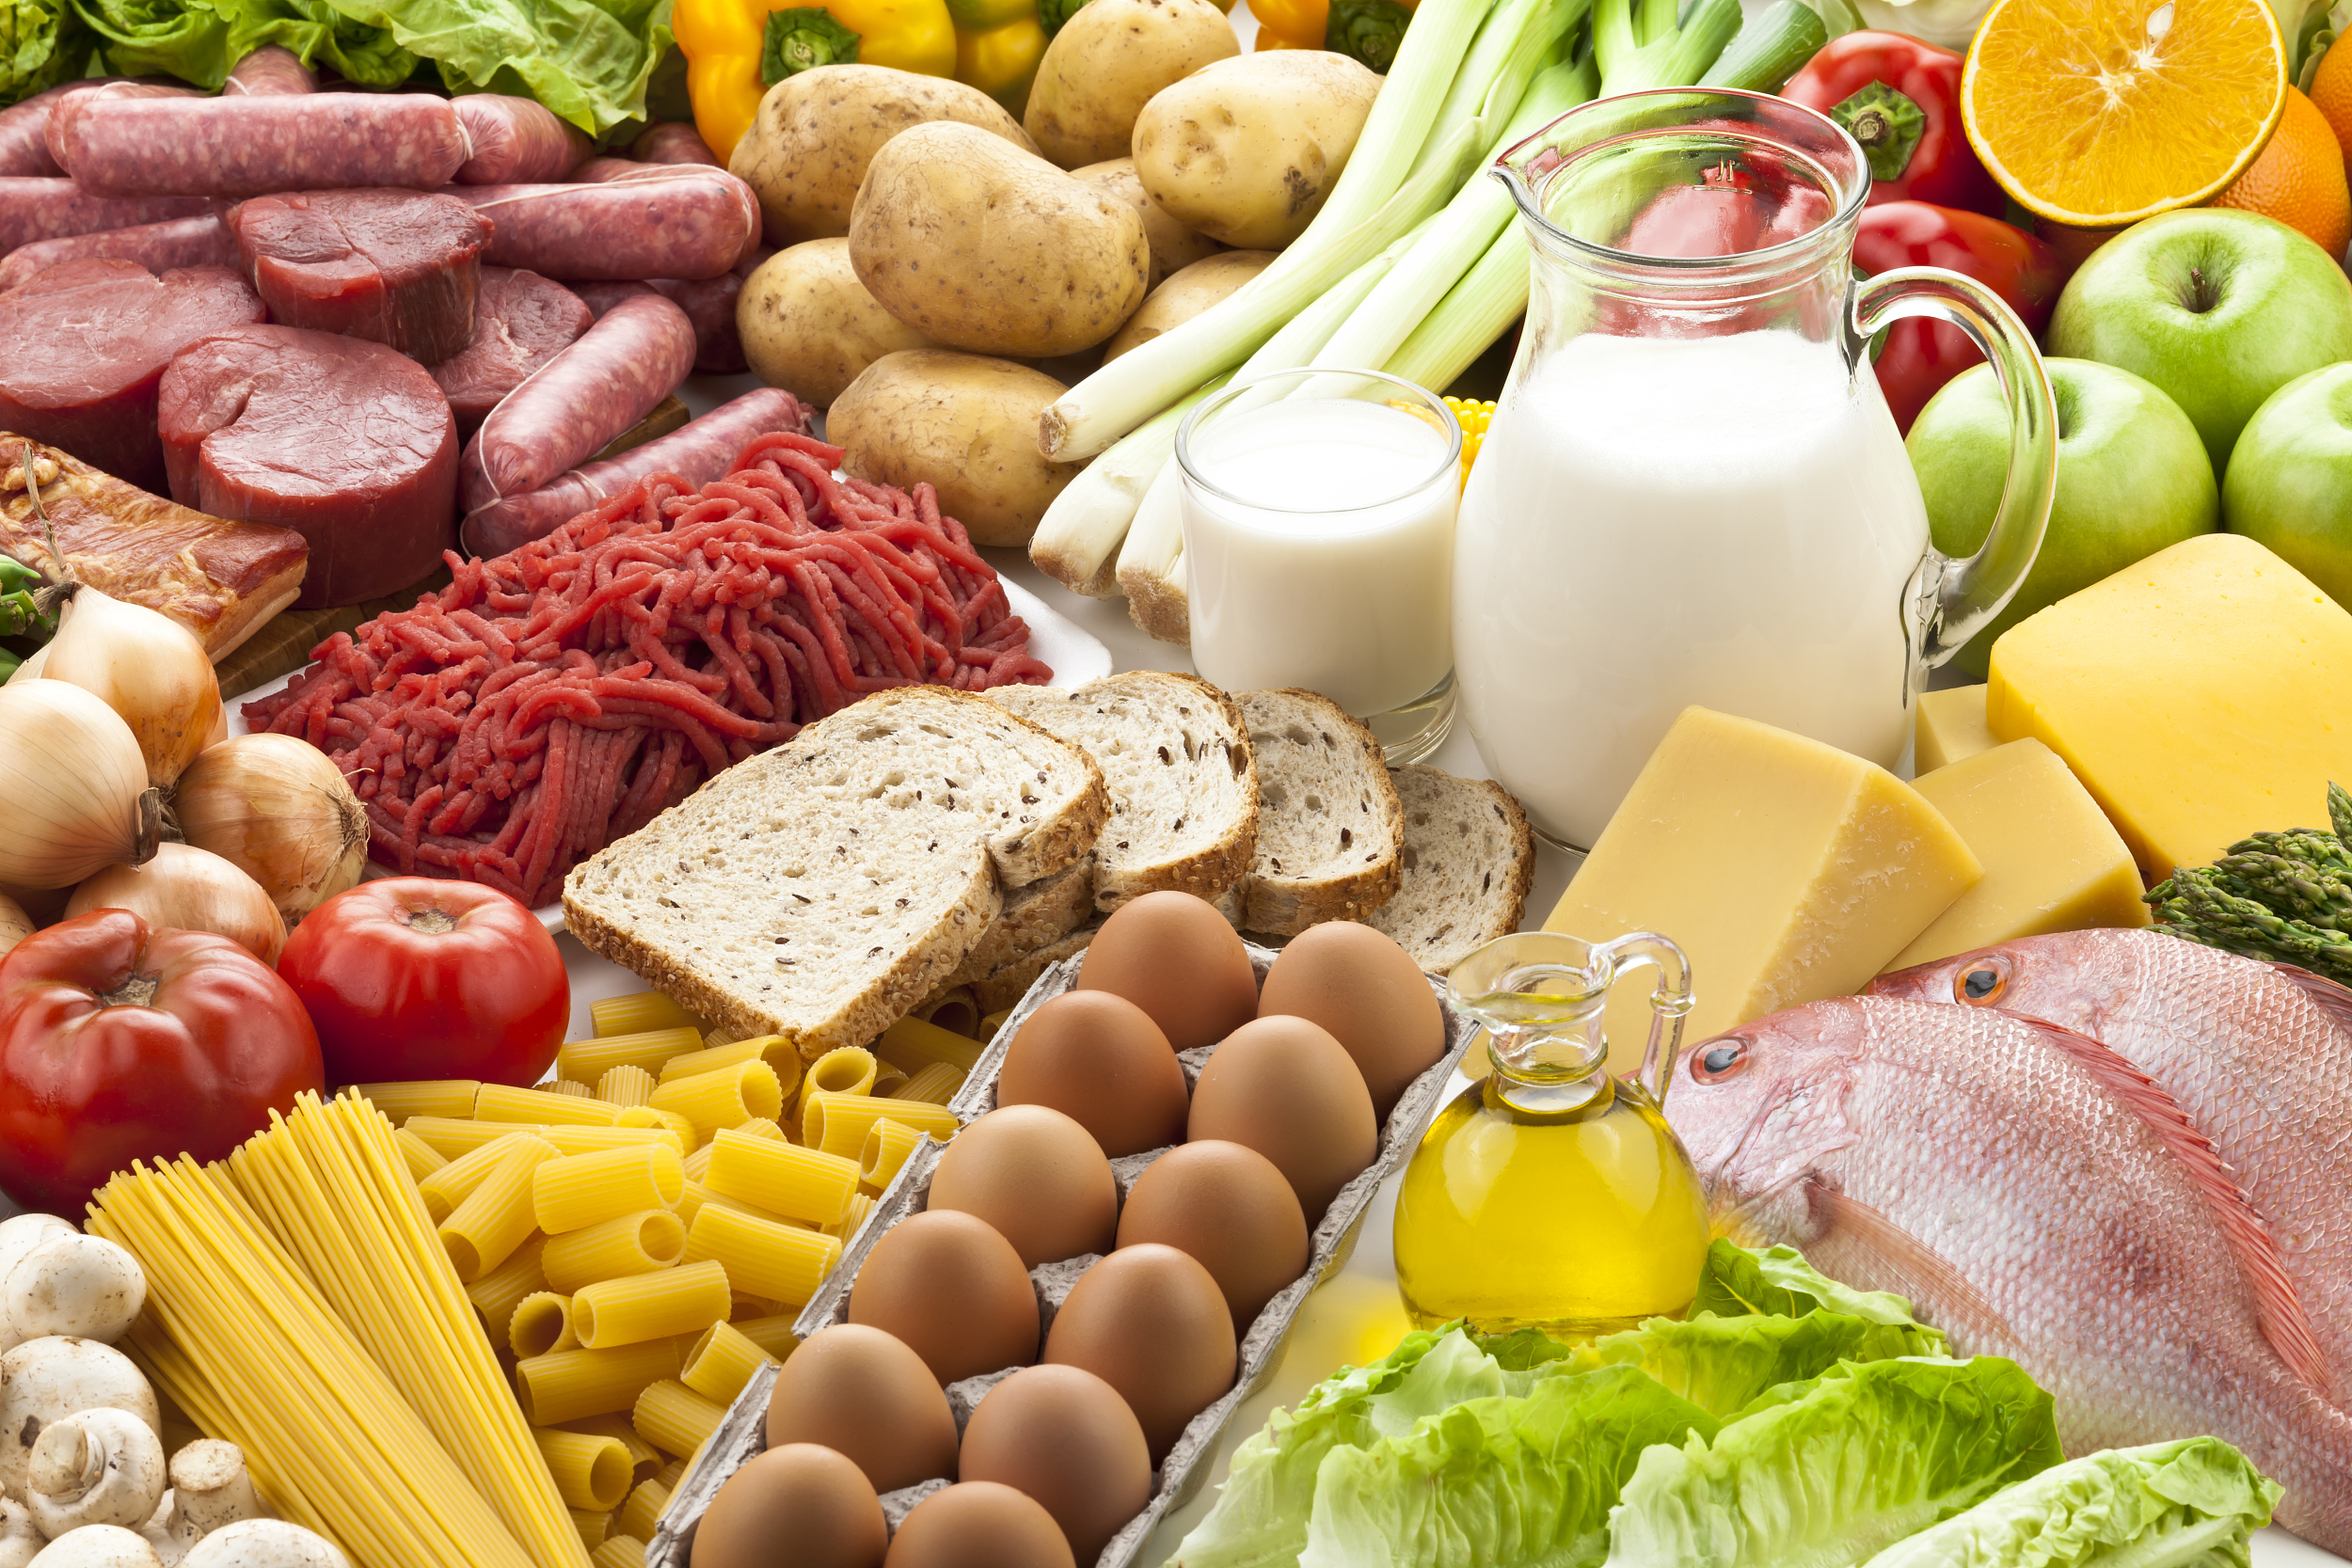 “阳康”后补充蛋白质 营养科专家提示要注意这些事项